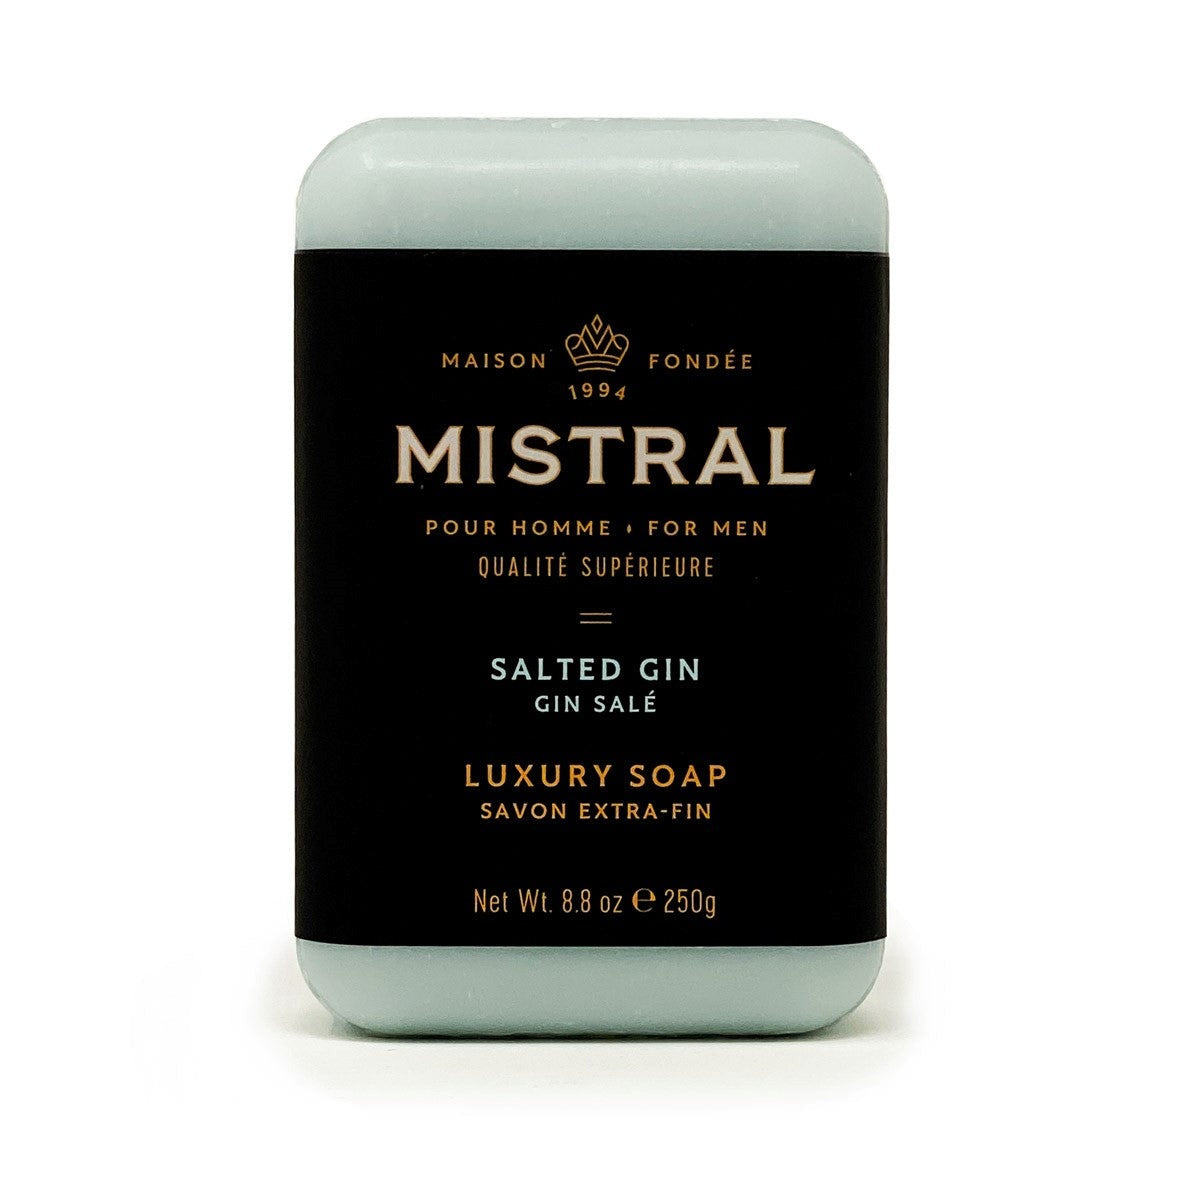 Mistral For Men Salted Gin Bar Soap